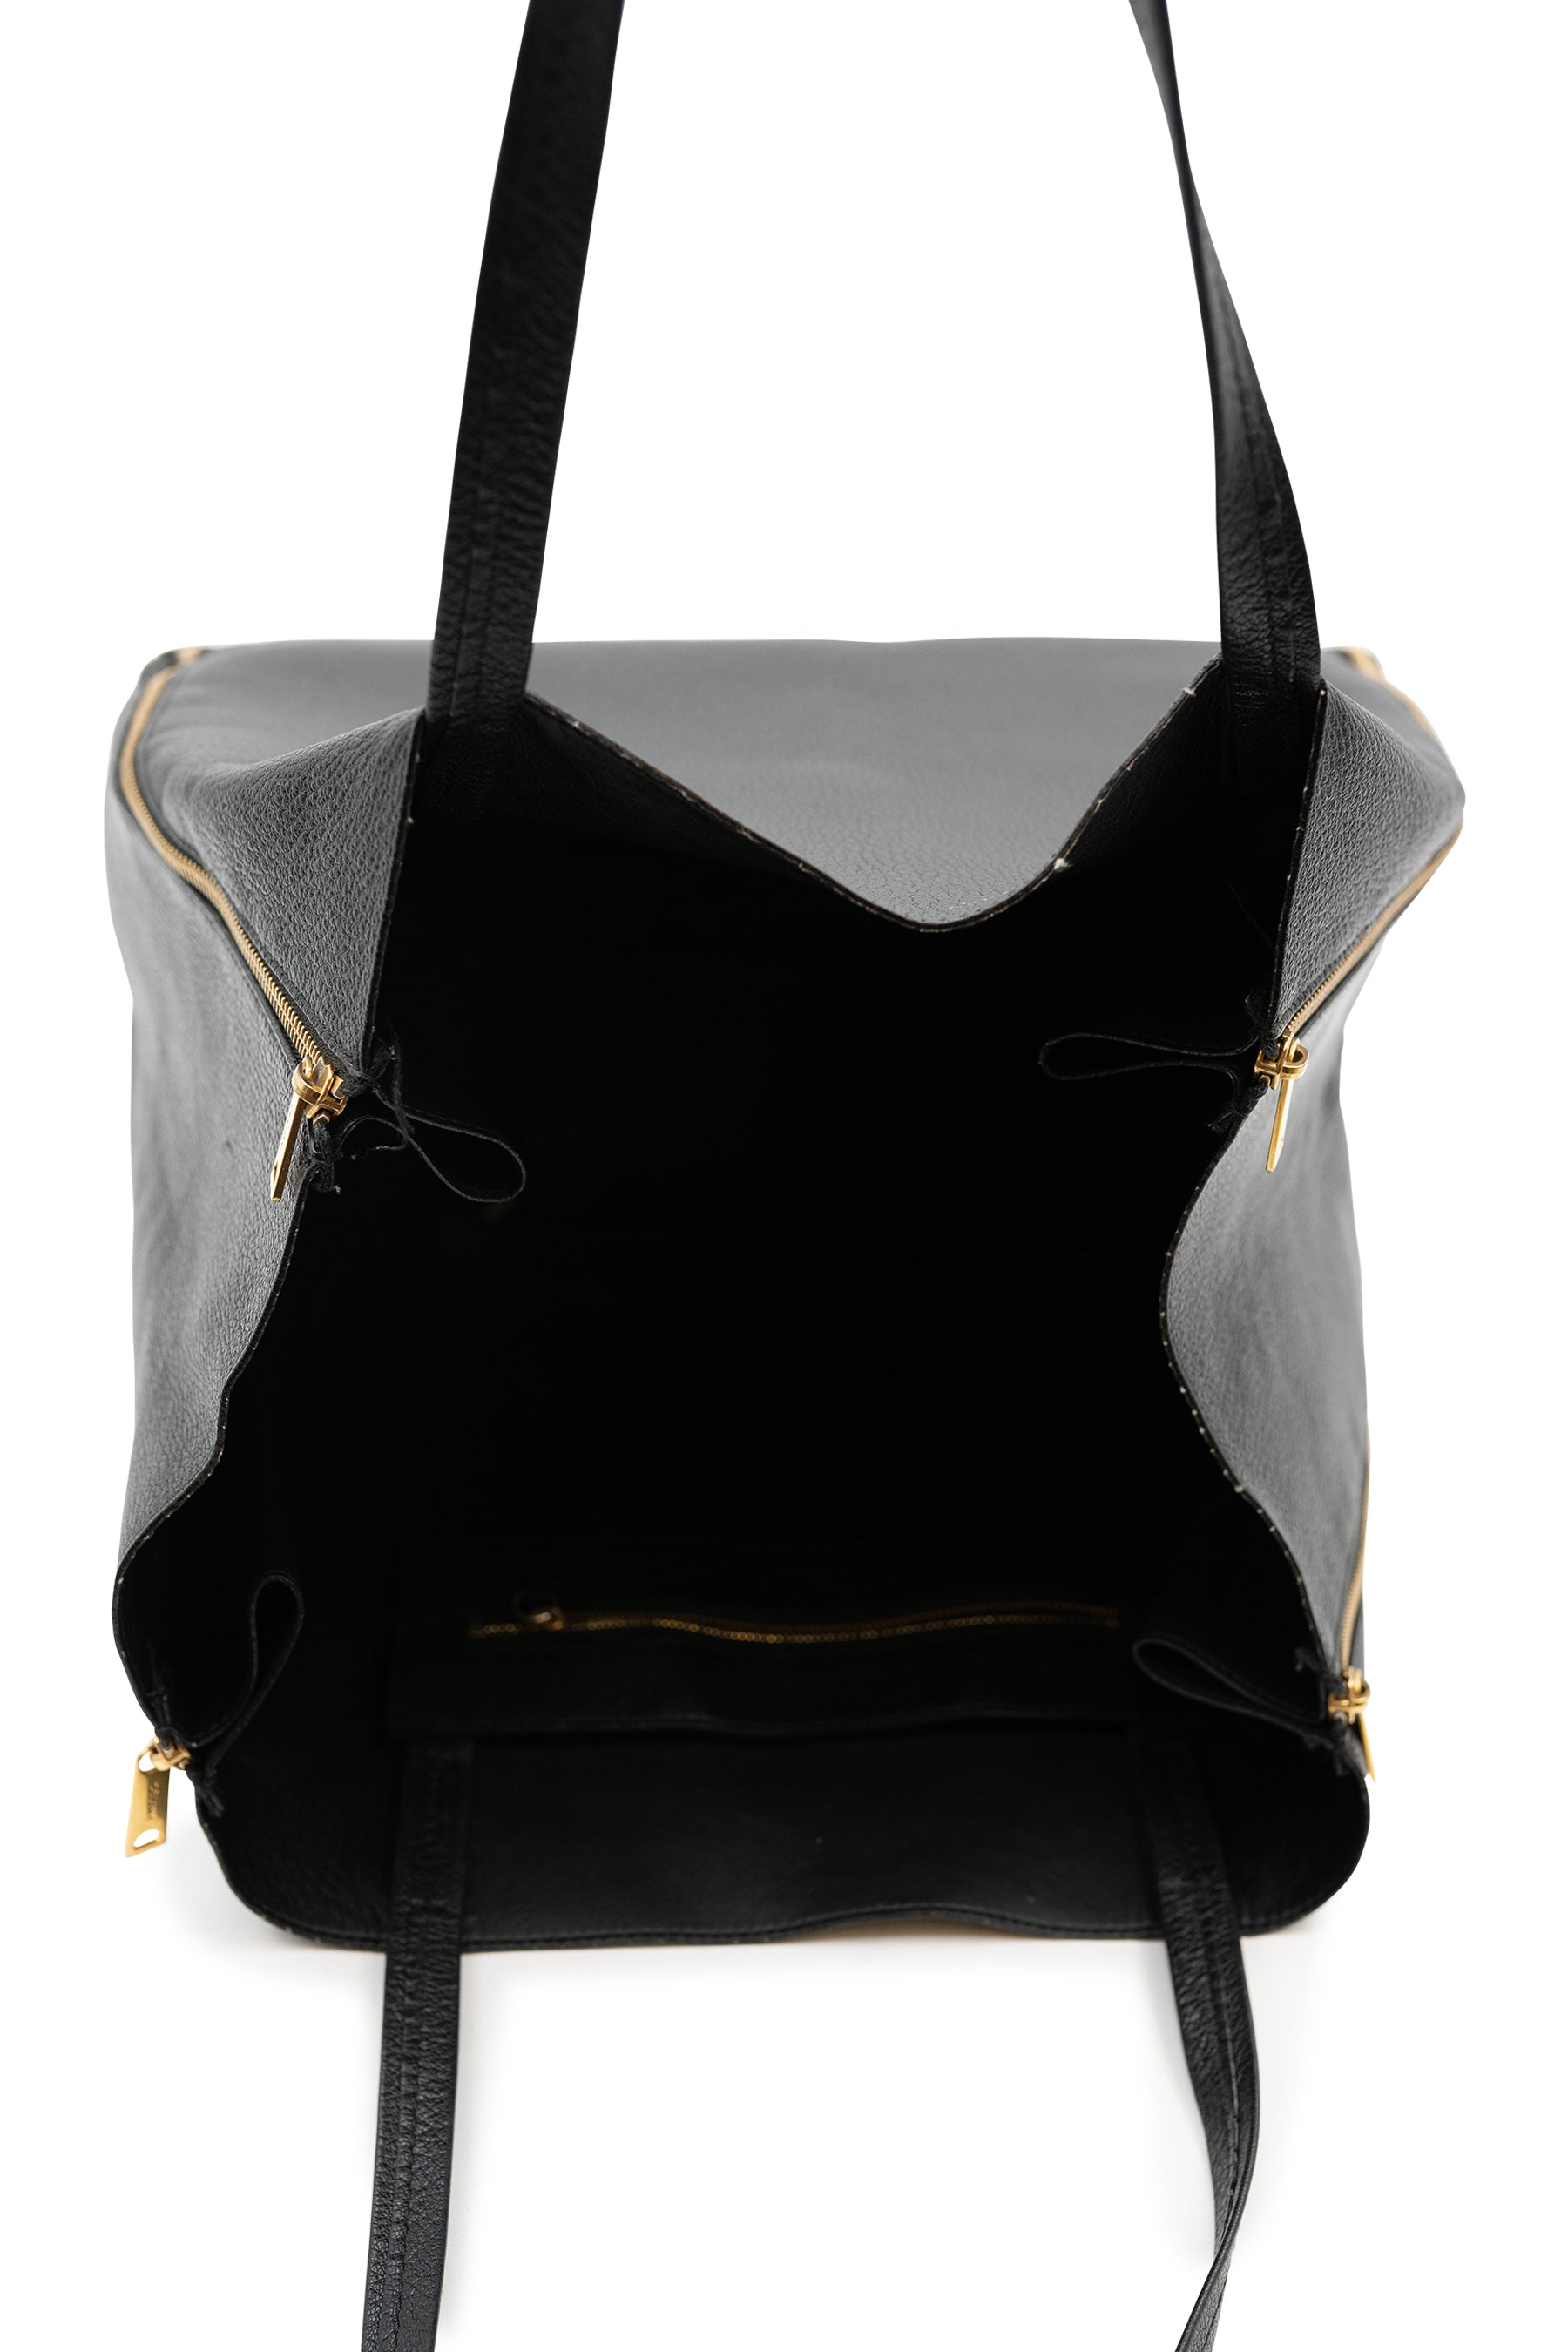 Authenticated used Celine Horizontal Cabas Women's Leather Tote Bag Black,Bordeaux, Adult Unisex, Size: (HxWxD): 39cm x 43cm x 11cm / 15.35'' x 16.92